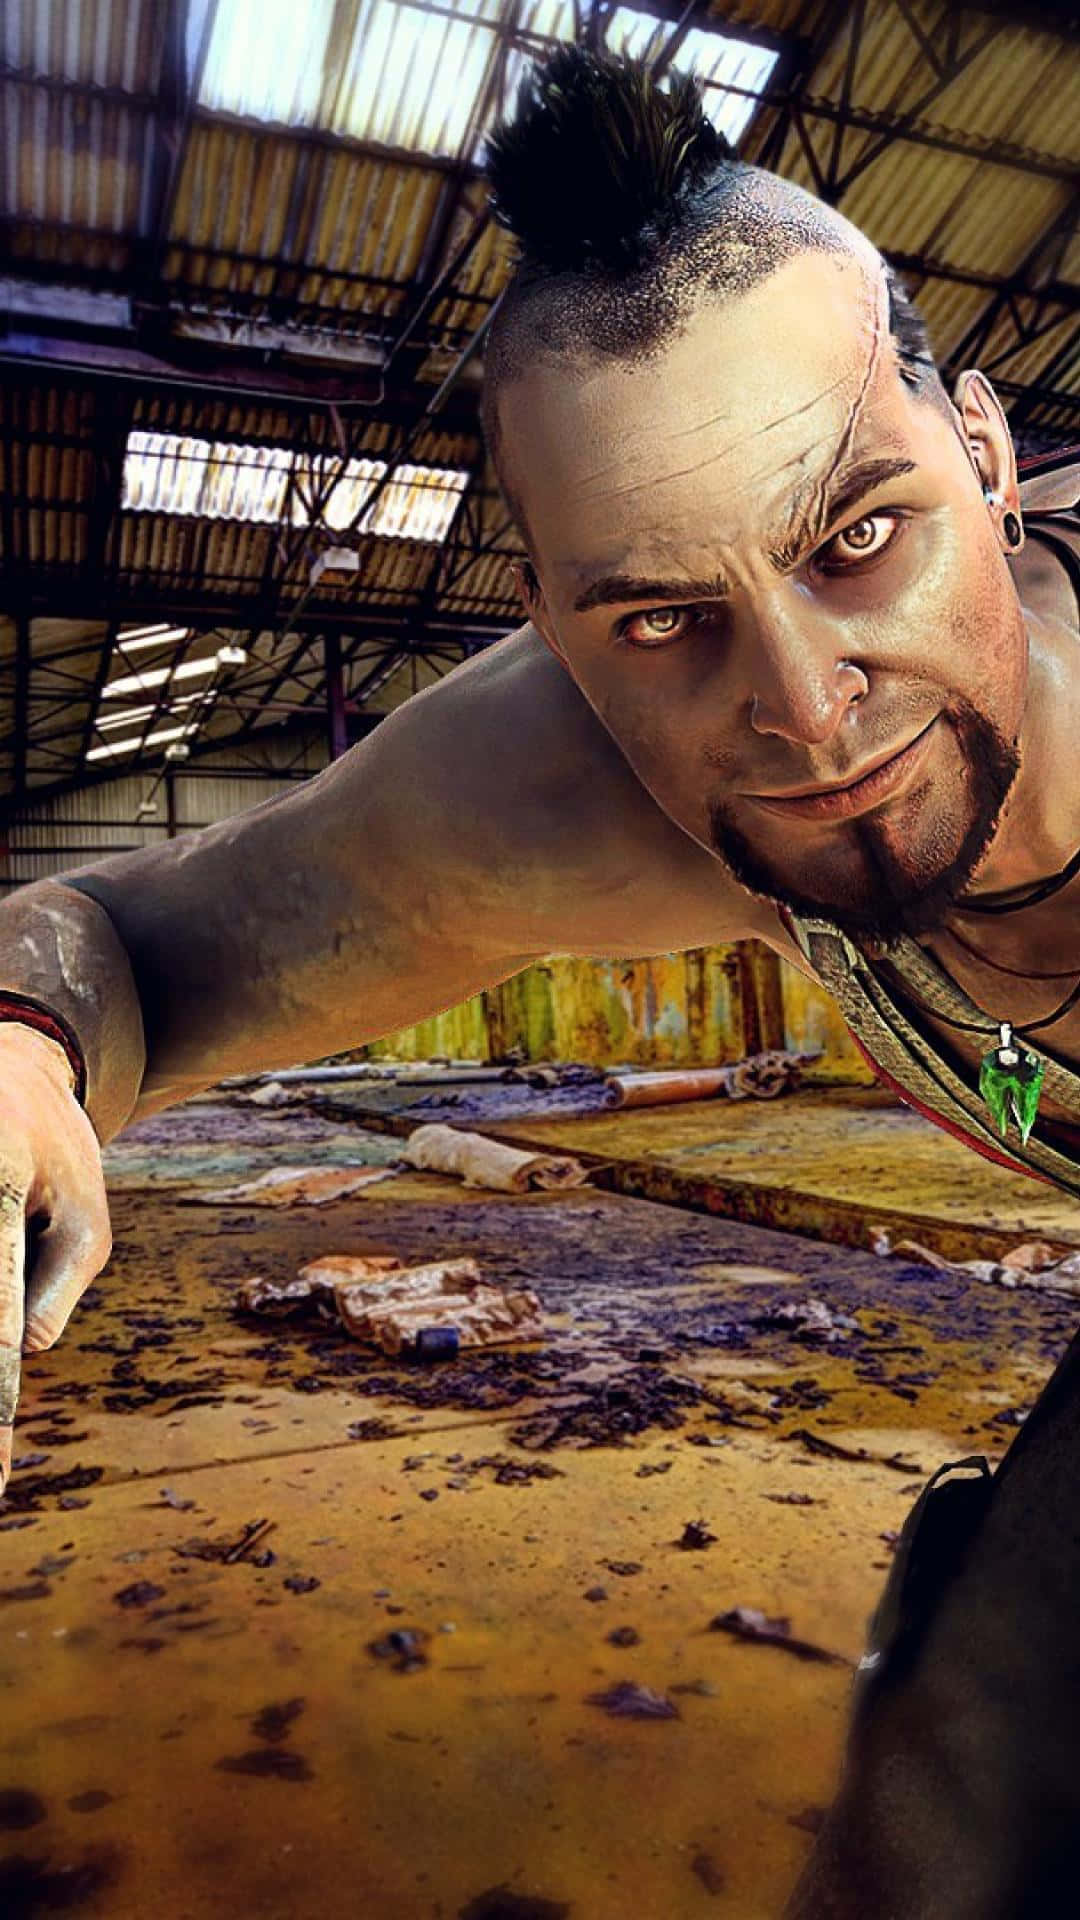 Iphonexs Max Bakgrundsbild Med Far Cry 3 - Vaas Montenegro Såg.